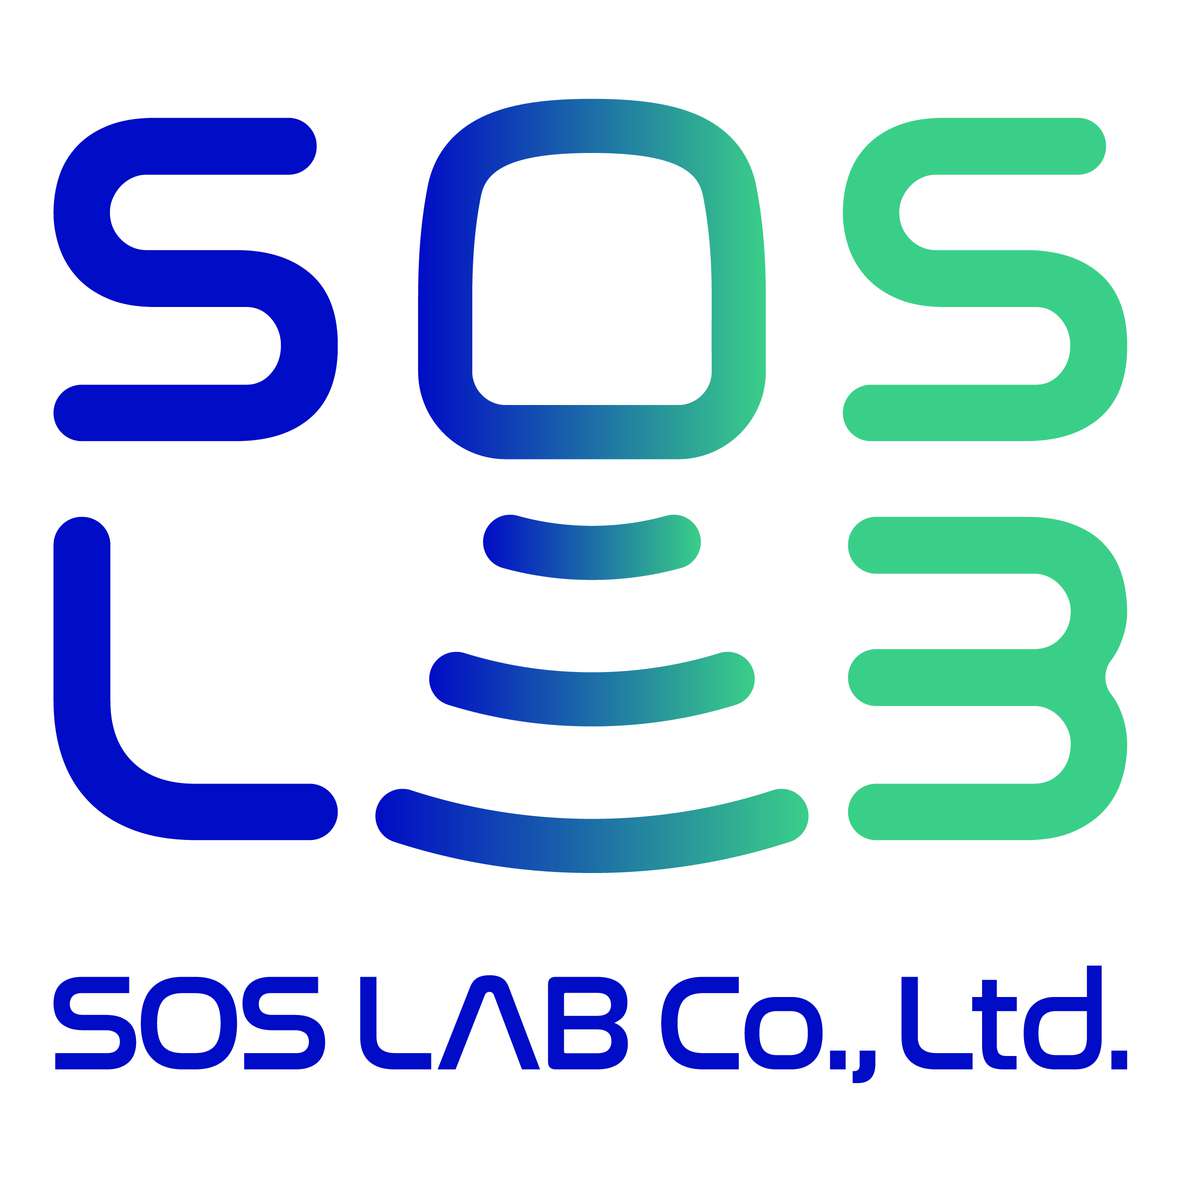 SOS Lab Co. Ltd.